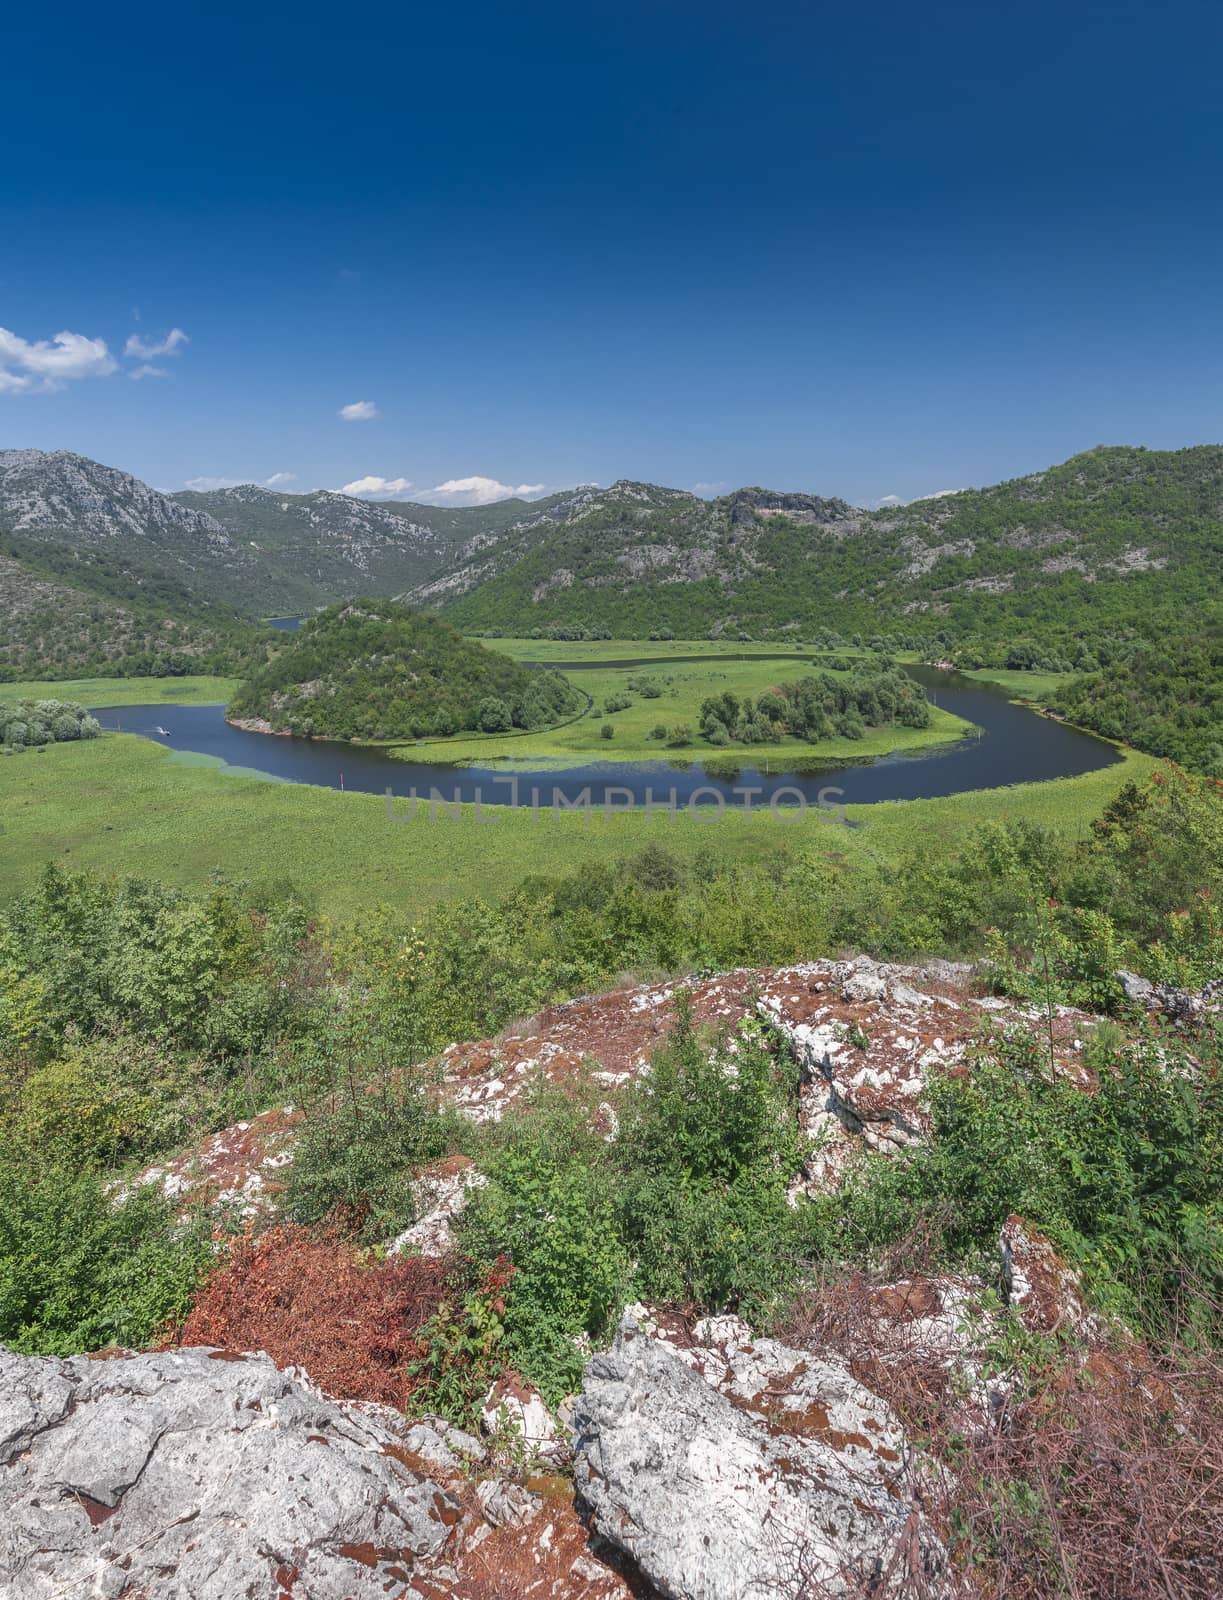 Skadar lake and Crnojevica river in Montenegro by Multipedia